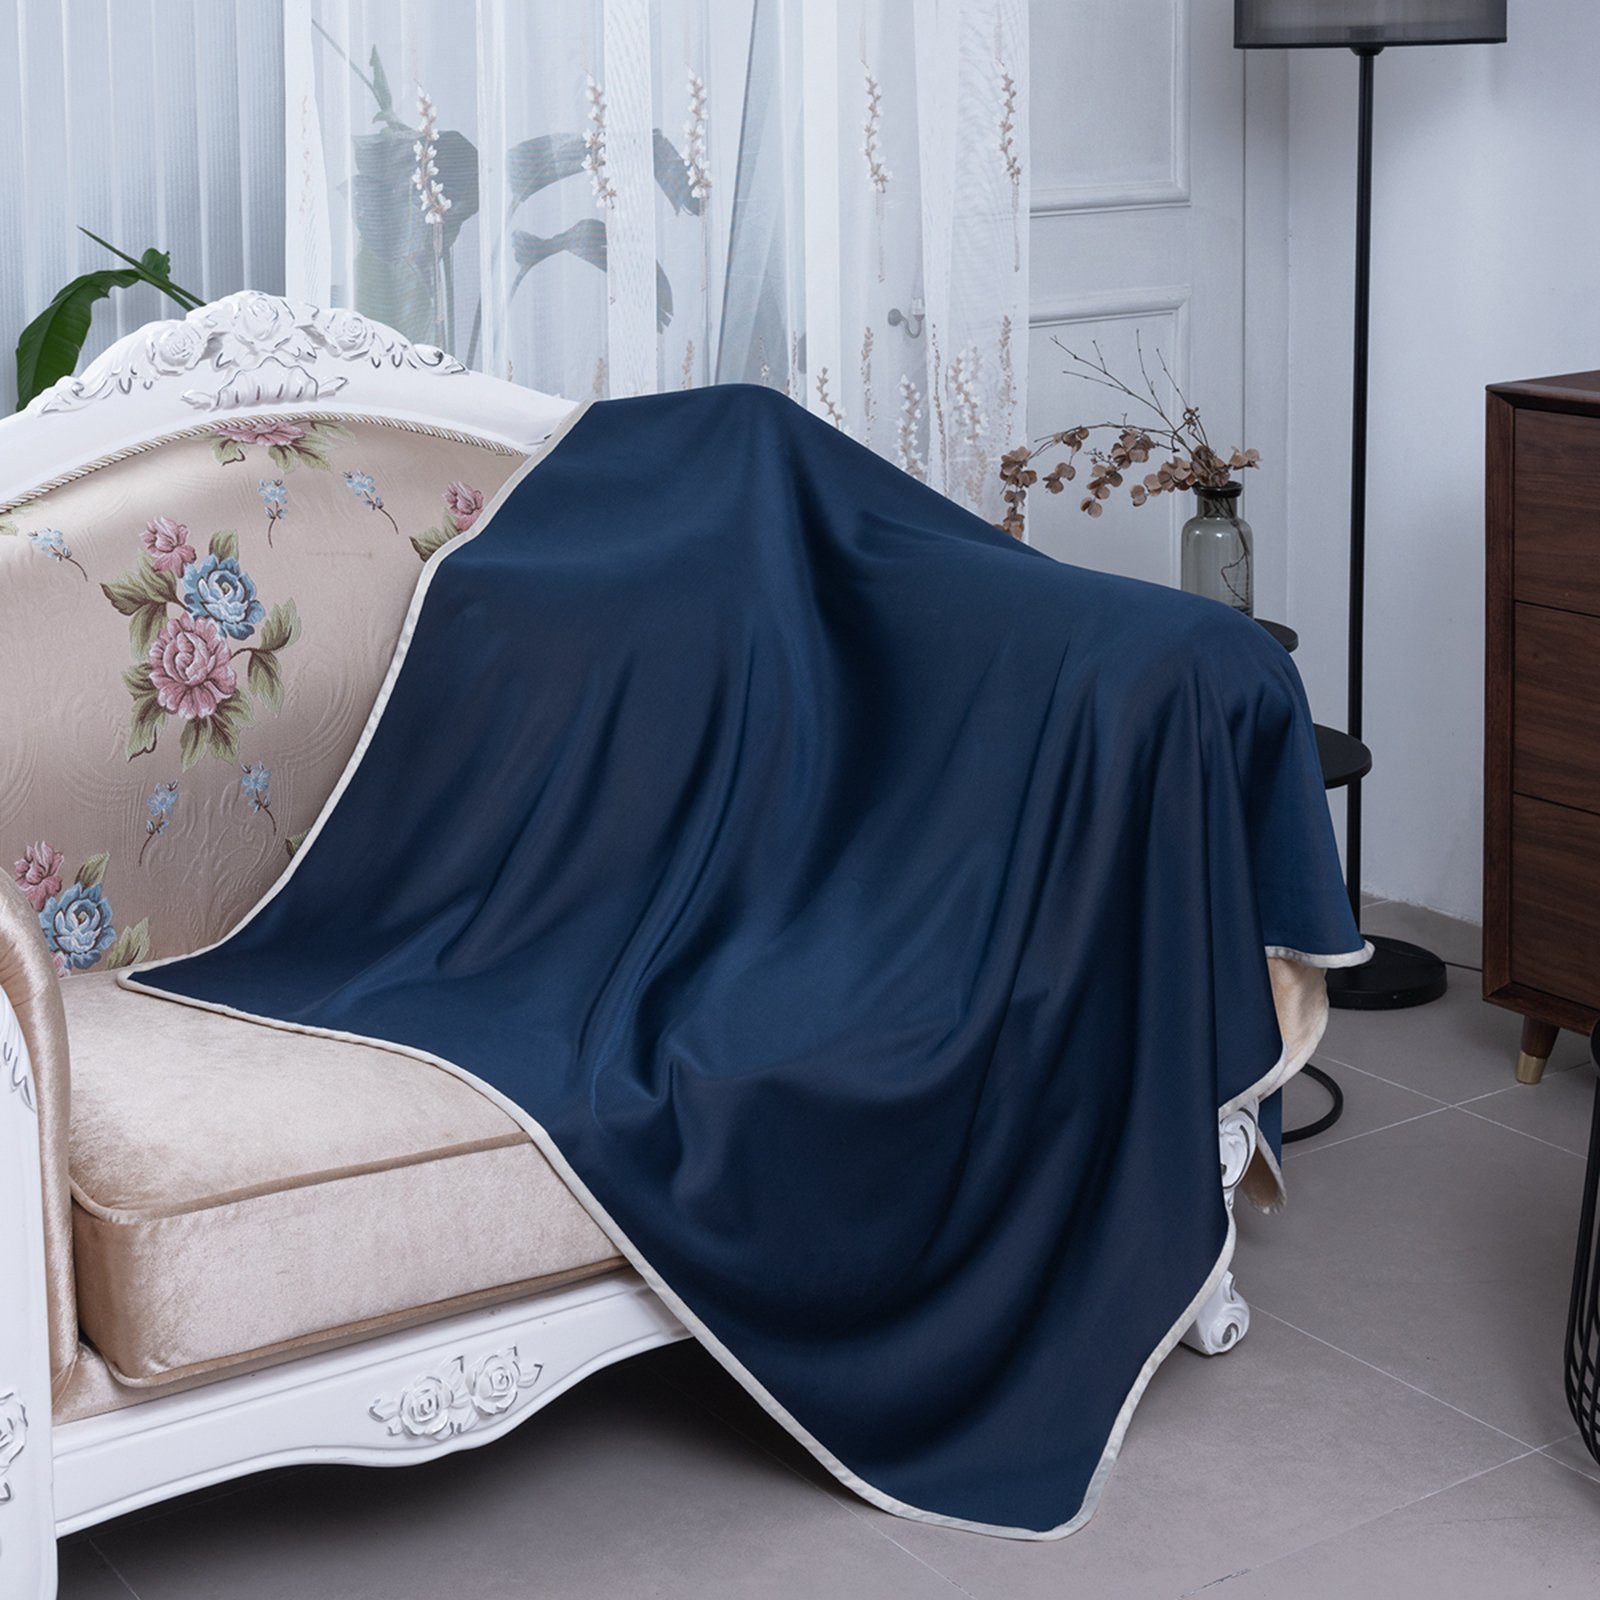 superweiches Sofa-Bettzeug, Sommerdecke doppelseitig, Flanell-Fleece; Baby-Decke für Tagesdecke kühlend, 152x127cm, Rosnek, Marineblau